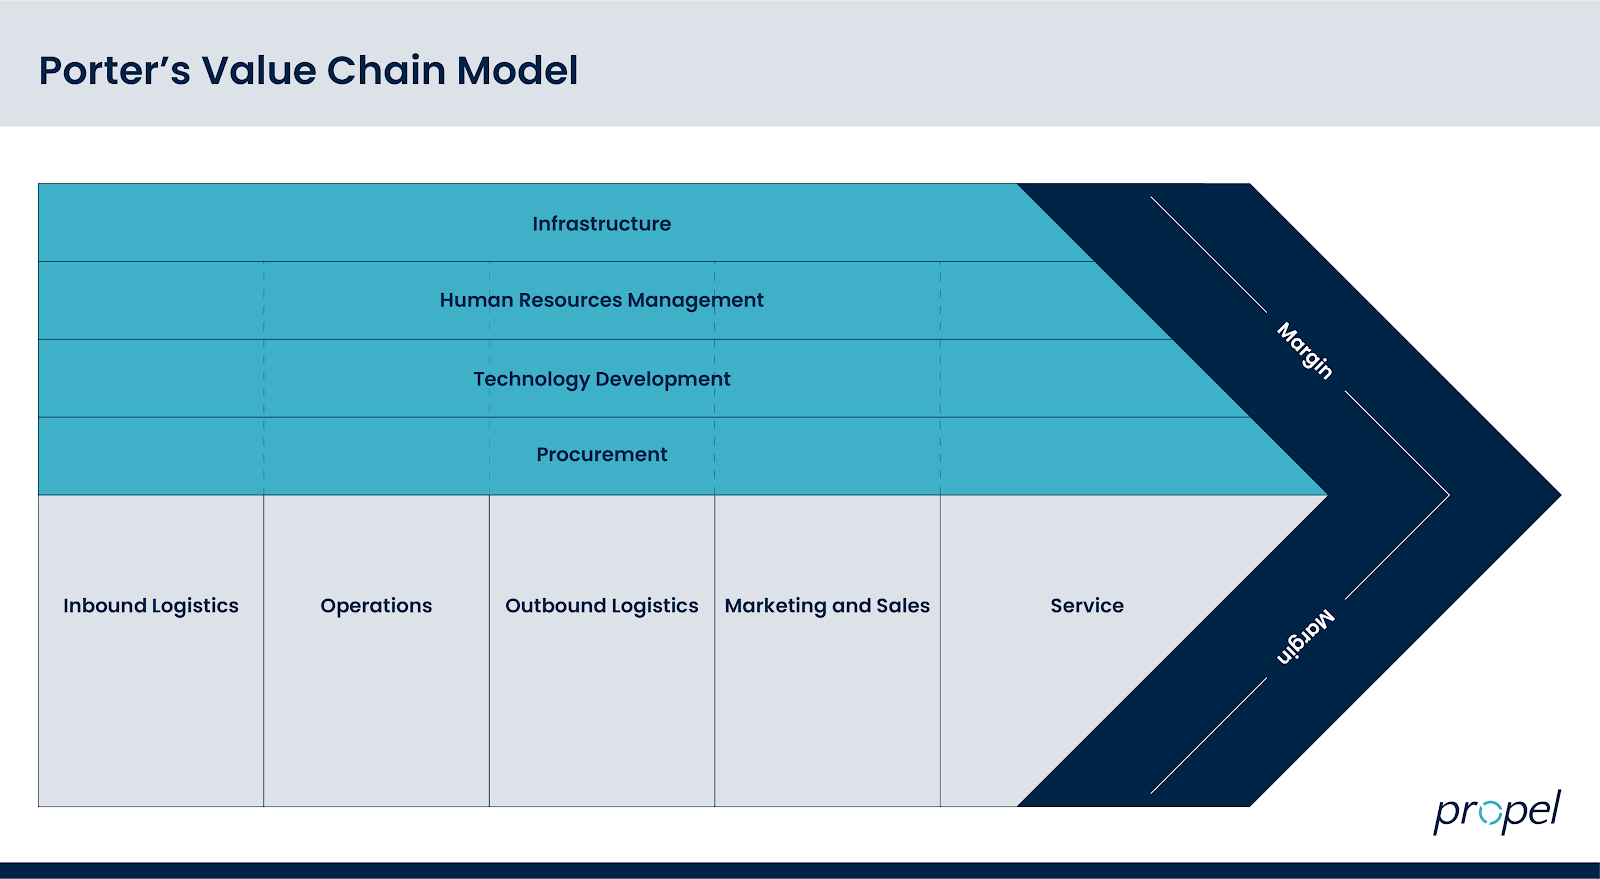 Partner's value chain model for customer retention